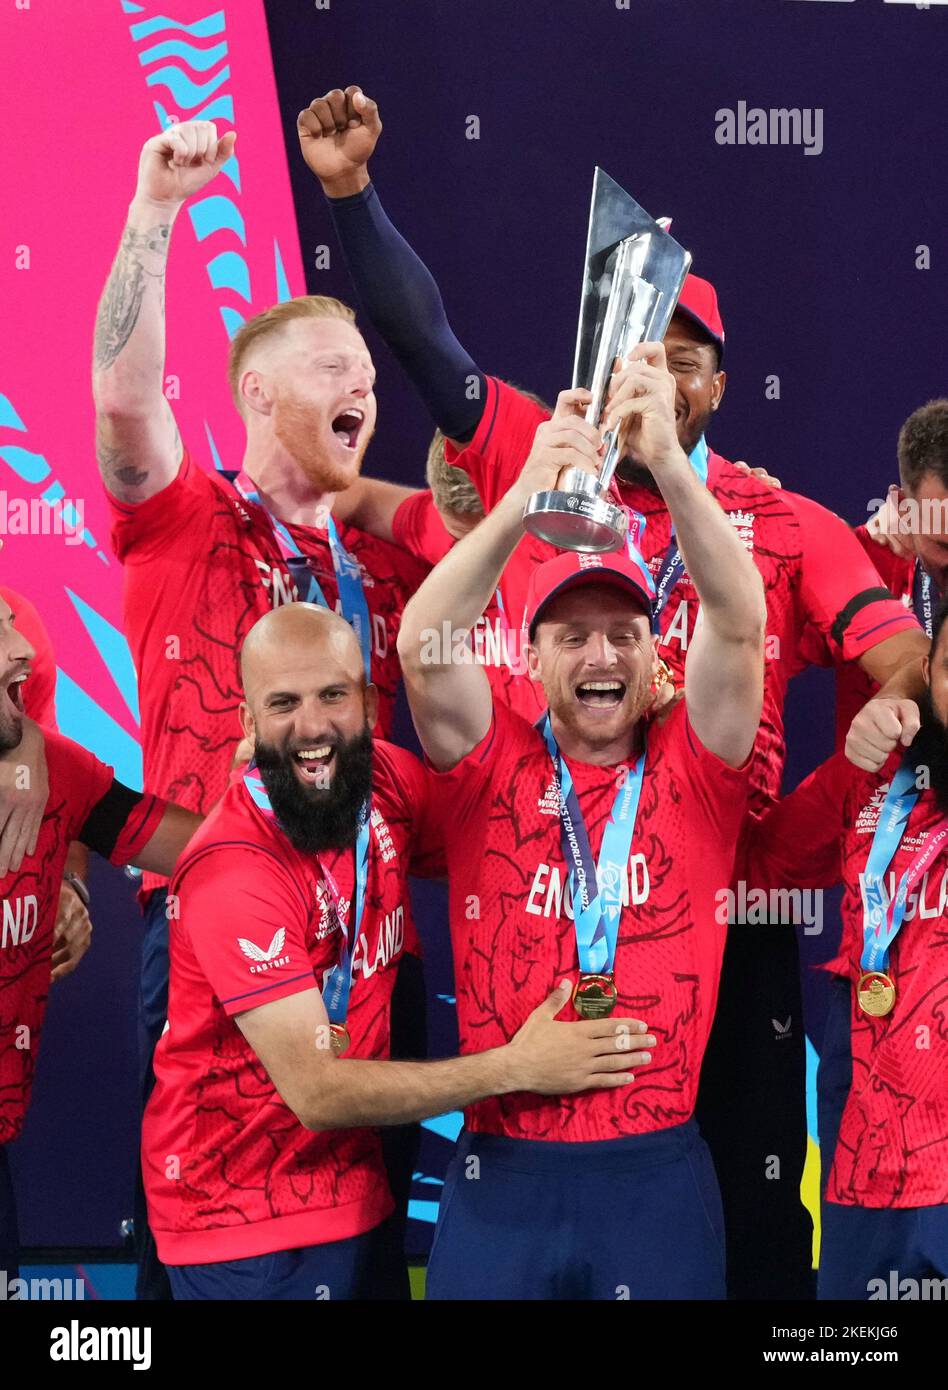 L'Angleterre lève le trophée après avoir remporté le match de finale de la coupe du monde T20 au Melbourne Cricket Ground, Melbourne. Date de la photo: Dimanche 13 novembre 2022. Banque D'Images